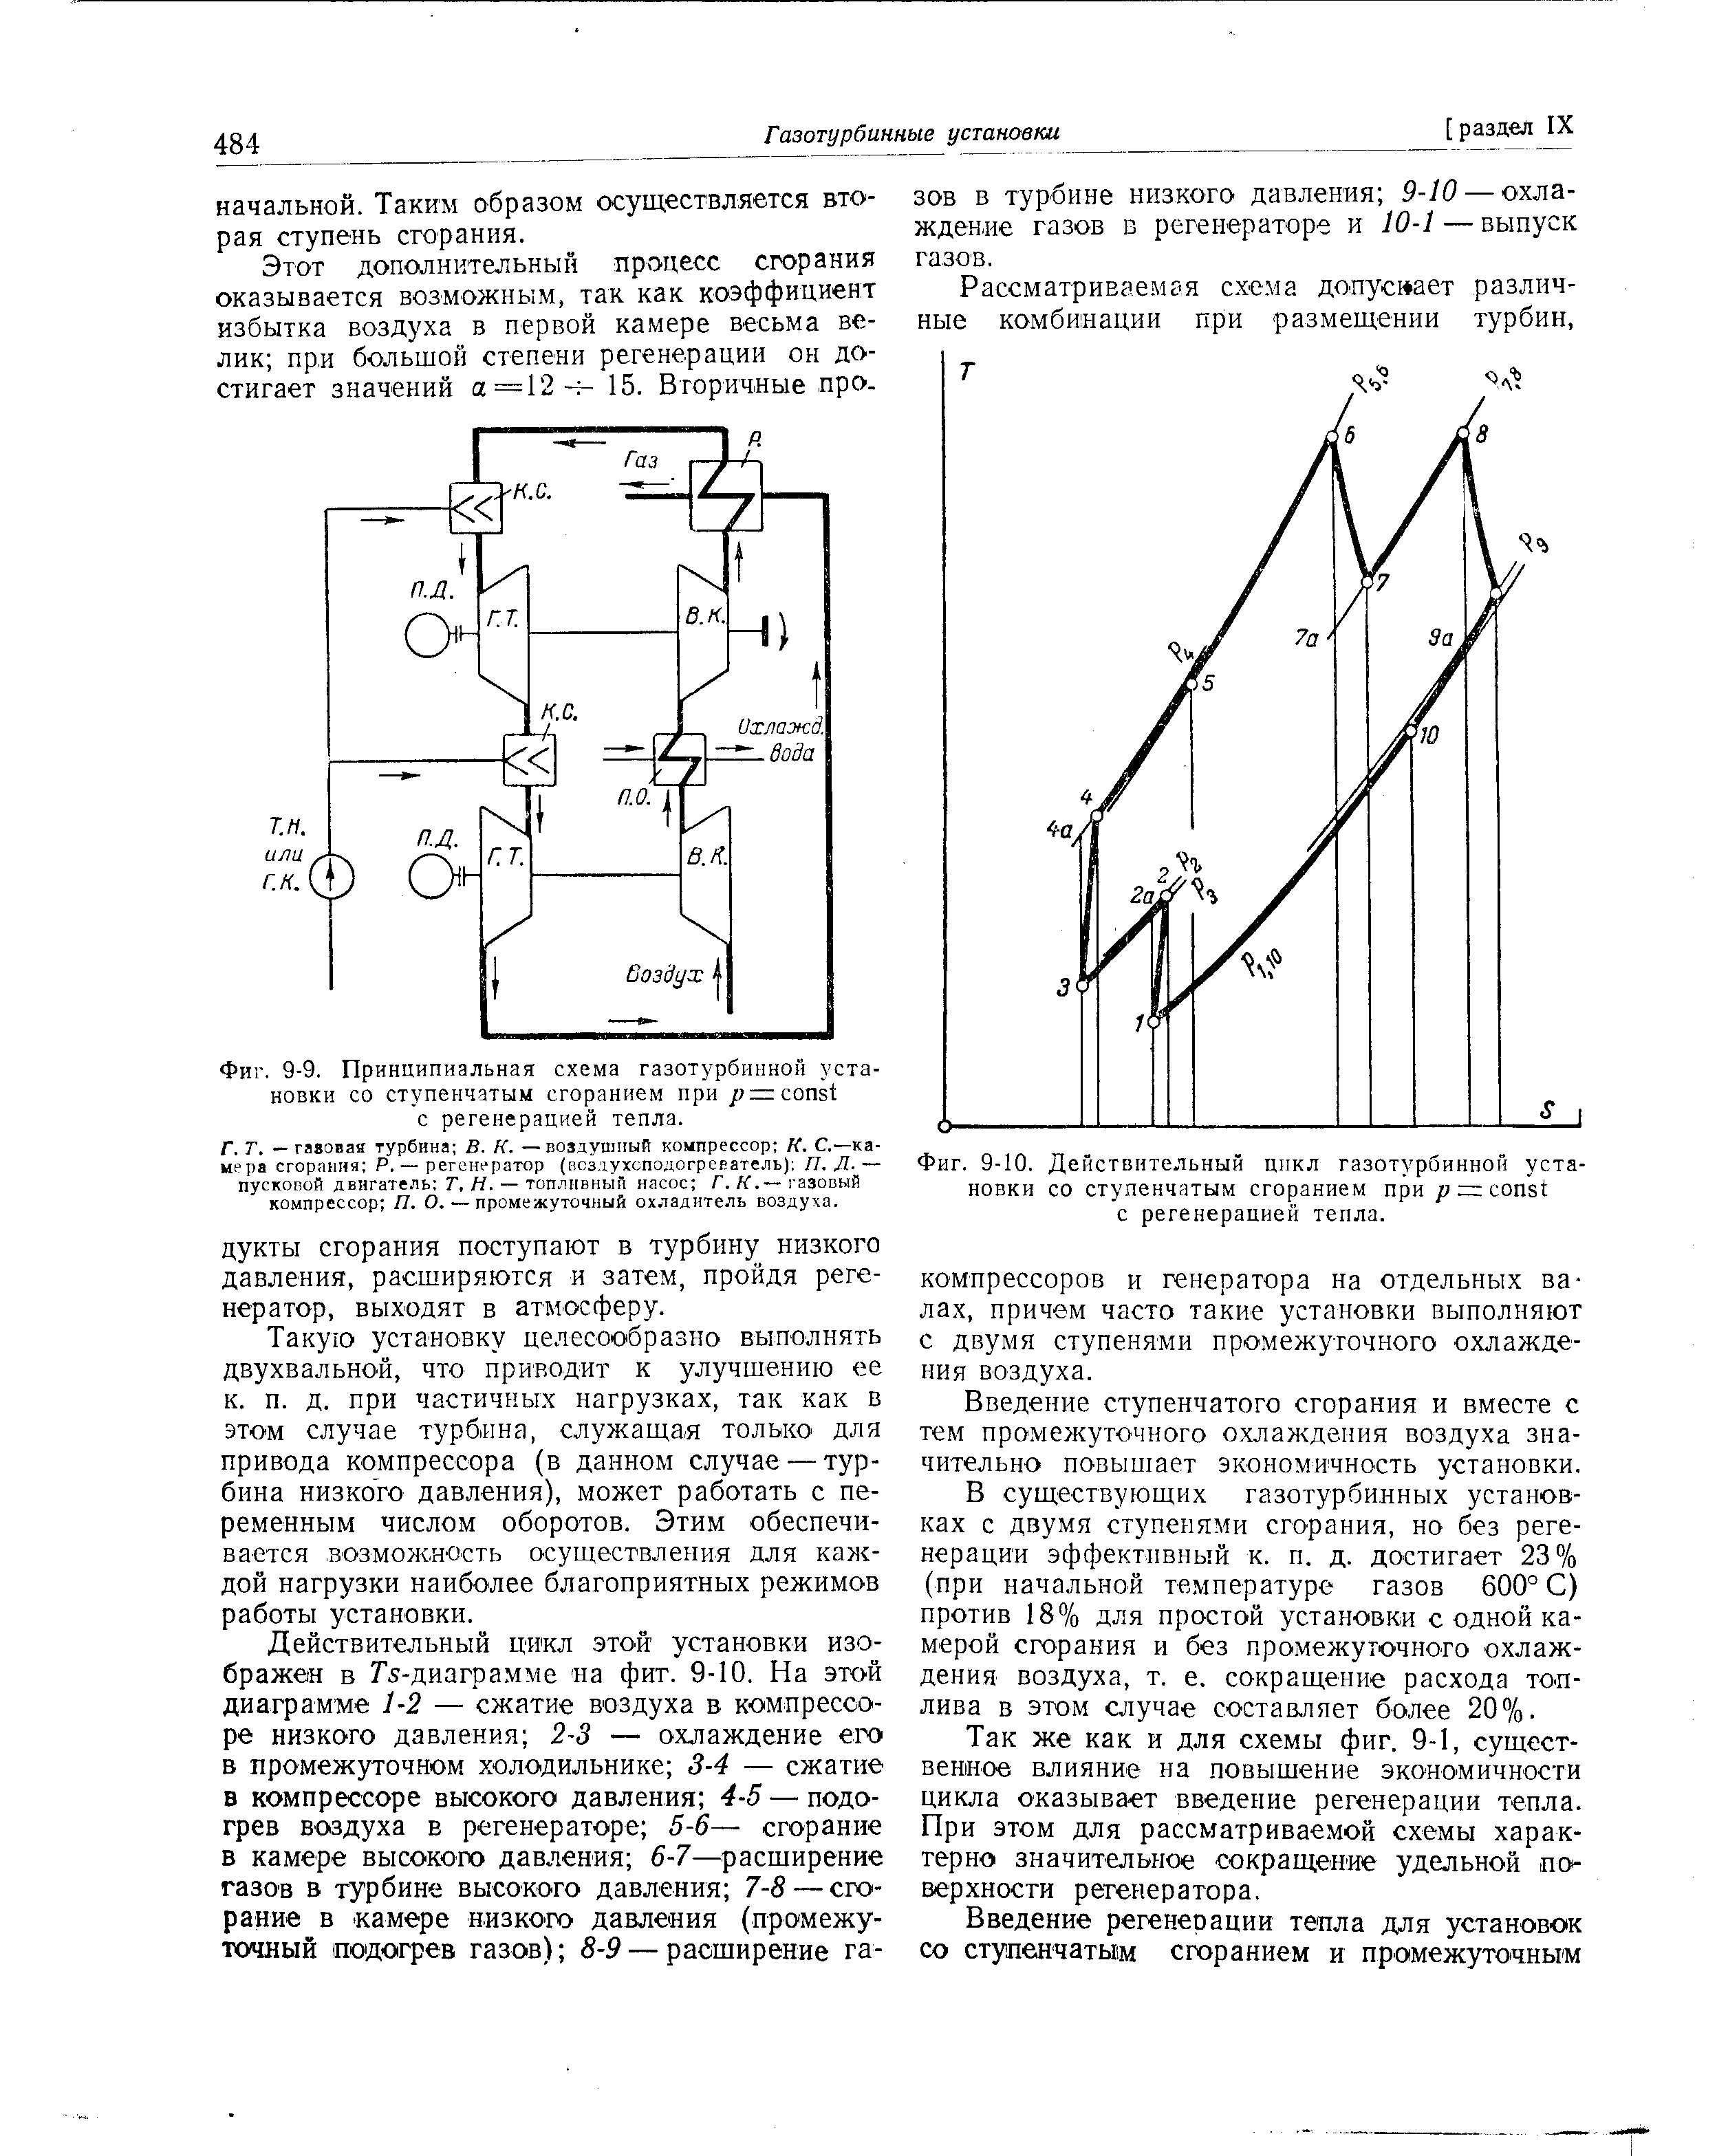 Фиг. 9-9. Принципиальная схема газотурбинной установки со ступенчатым сгоранием при jy = onst с регенерацией тепла.
